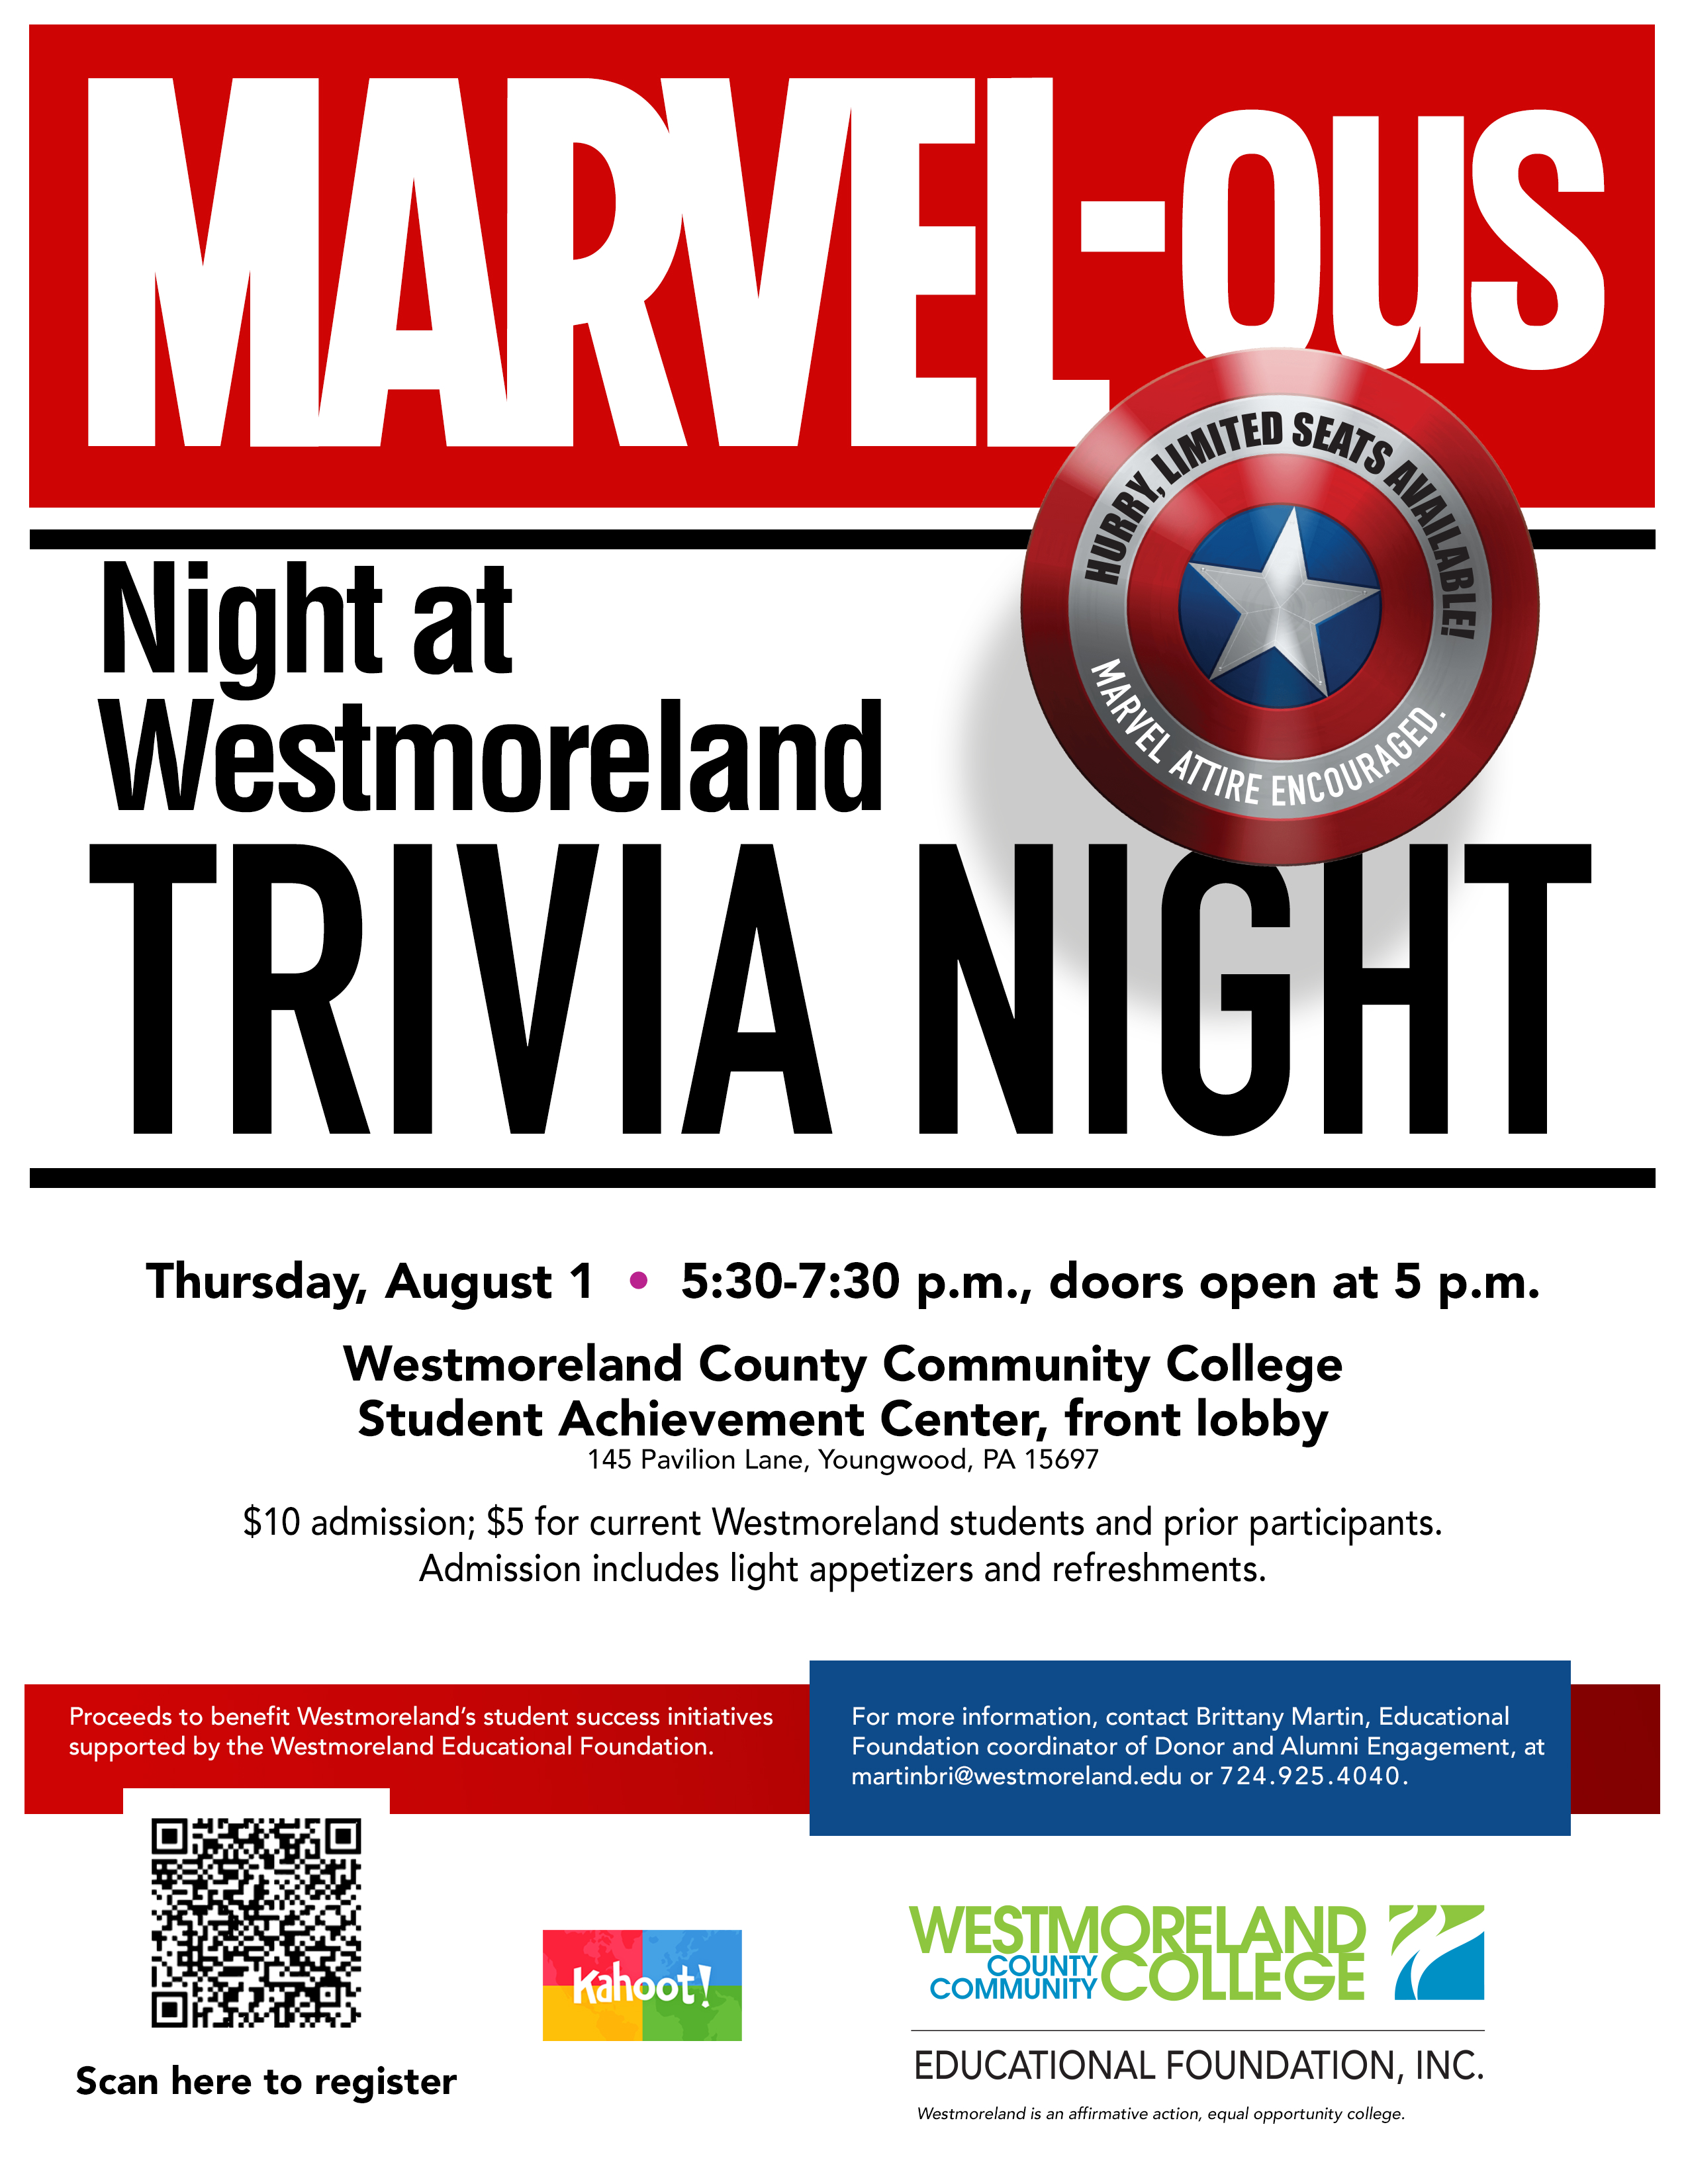 Marvel Trivia Night